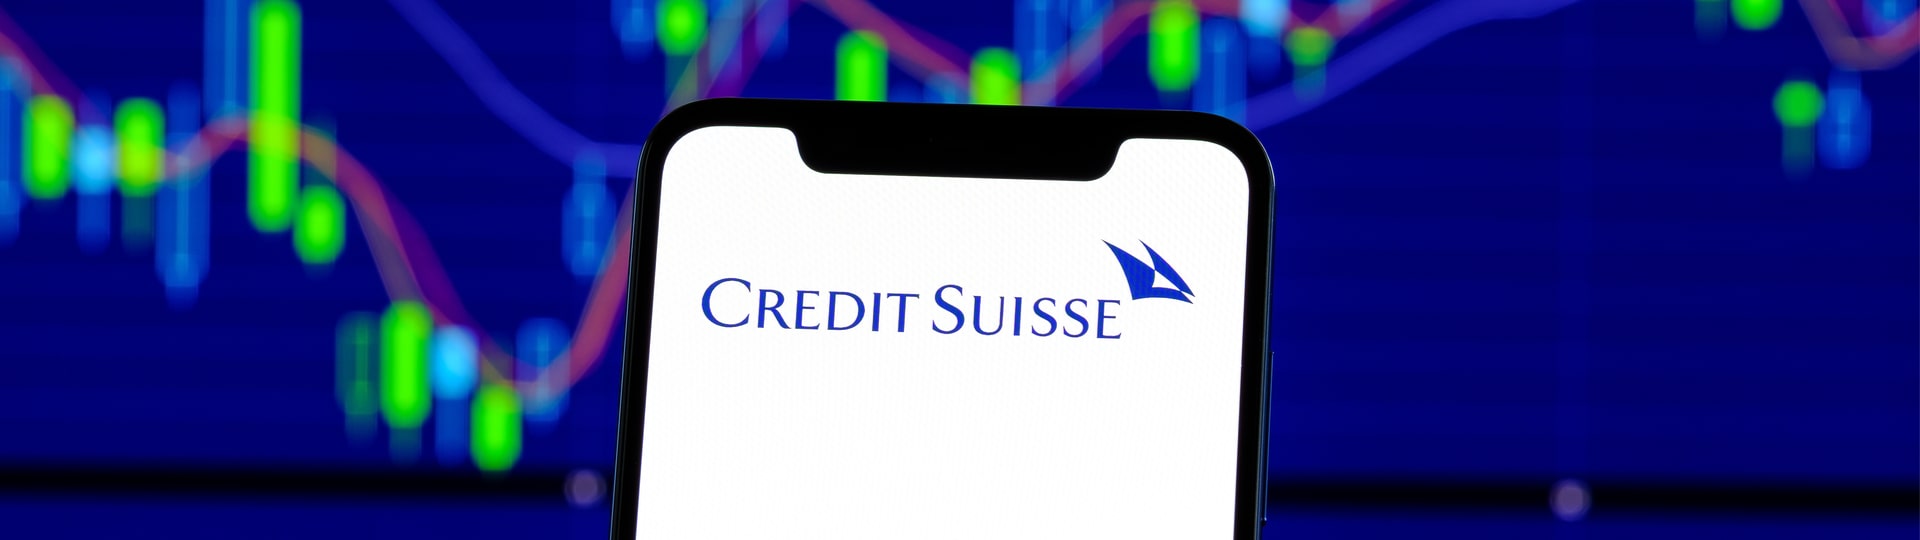 Švýcarská Credit Suisse podle zdrojů pracuje na možném navýšení kapitálu